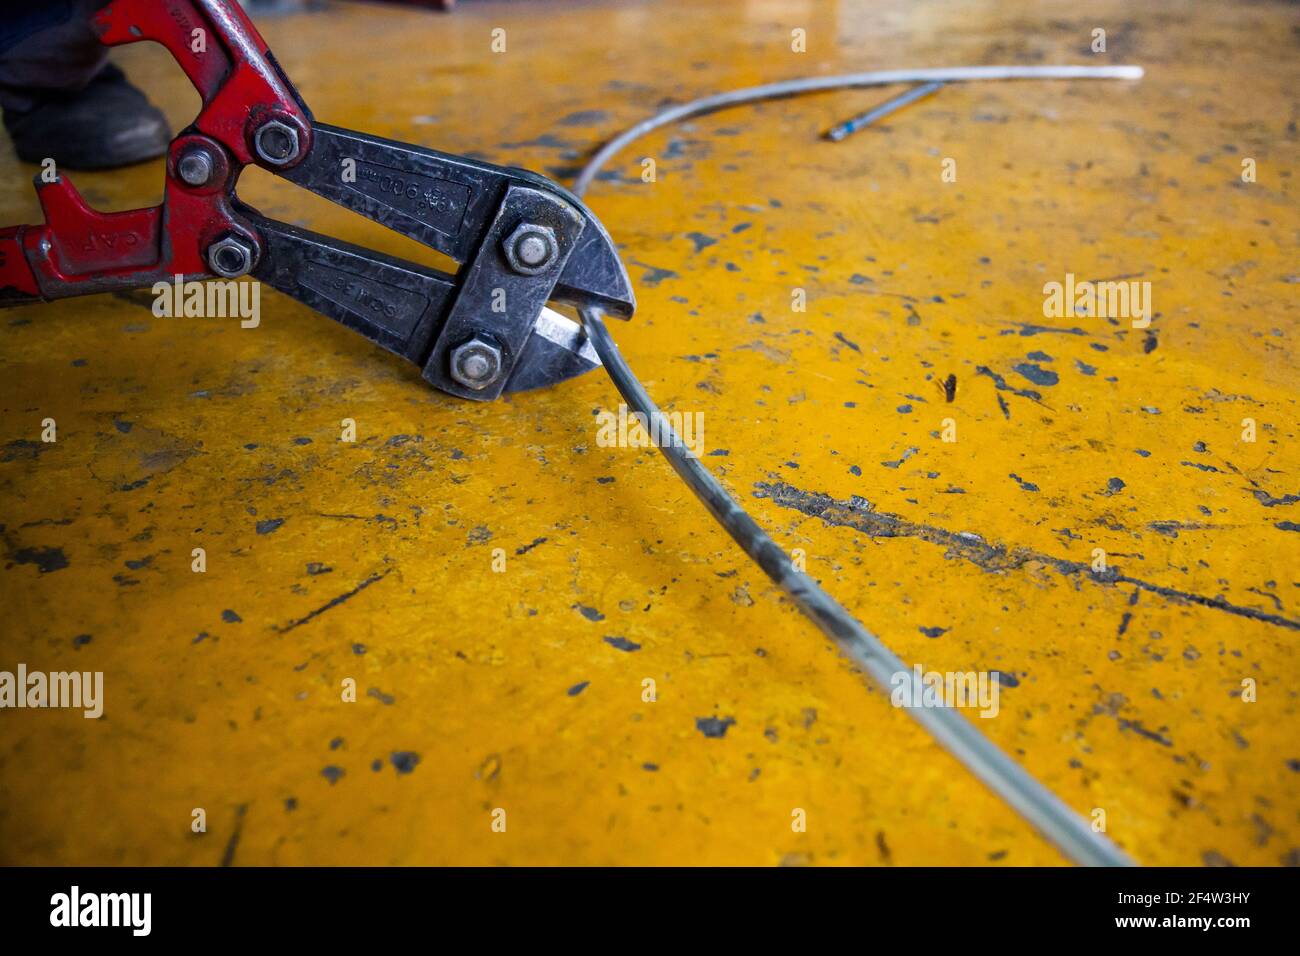 Große Schneidzange schneidet Aluminiumdraht. Gelber Beton gestrichenen Boden Hintergrund. Nahaufnahme. Stockfoto